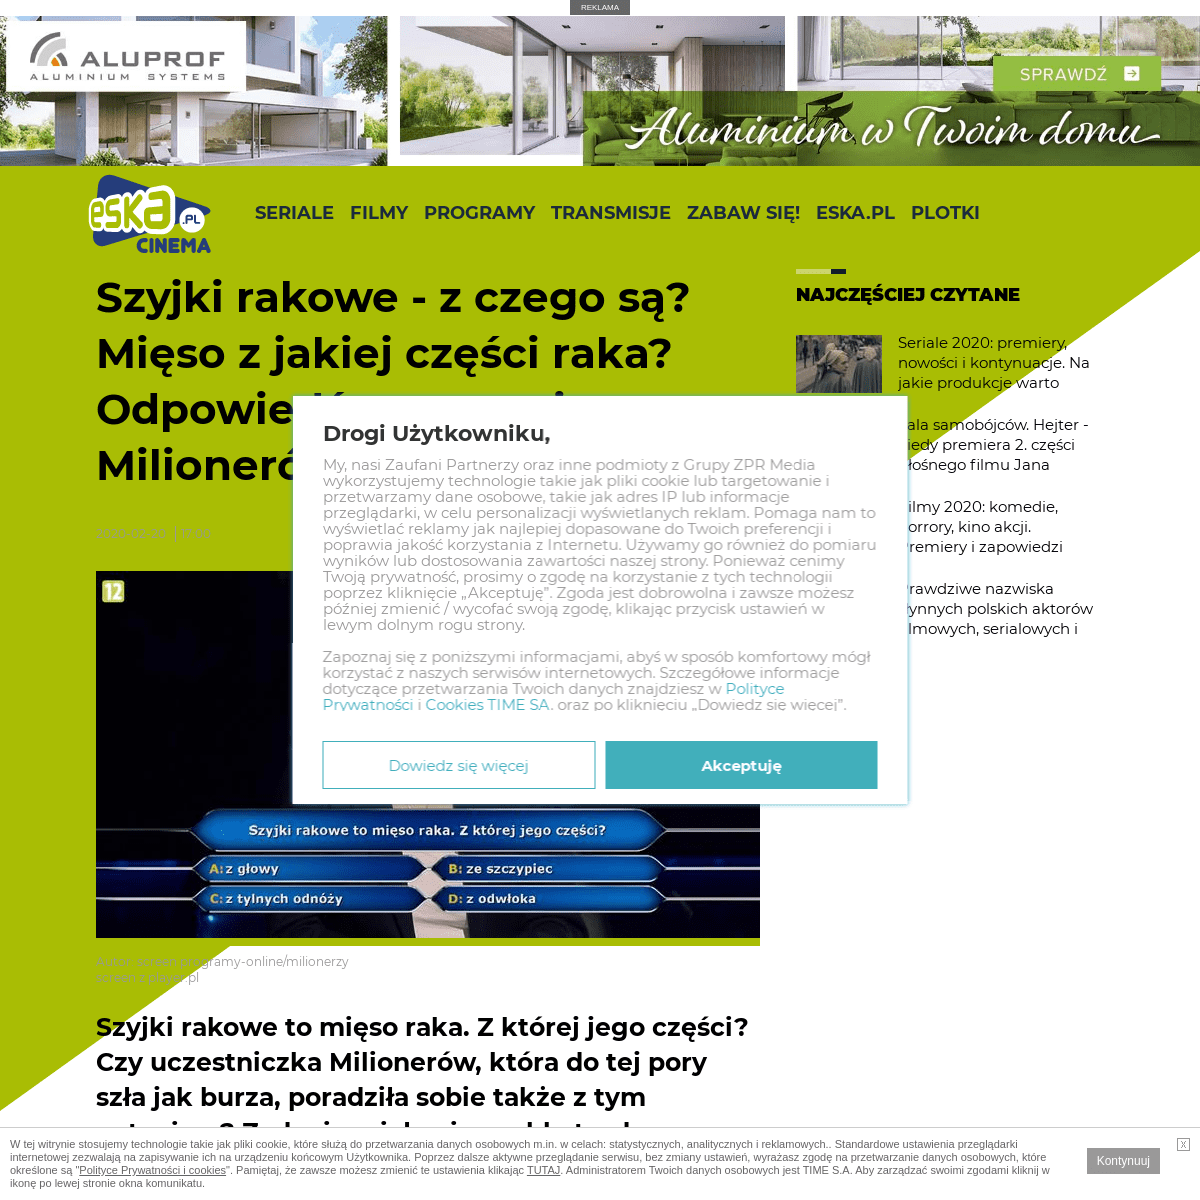 A complete backup of www.eska.pl/cinema/news/szyjki-rakowe-z-czego-sa-mieso-z-jakiej-czesci-raka-odpowiedz-na-pytanie-z-milioner